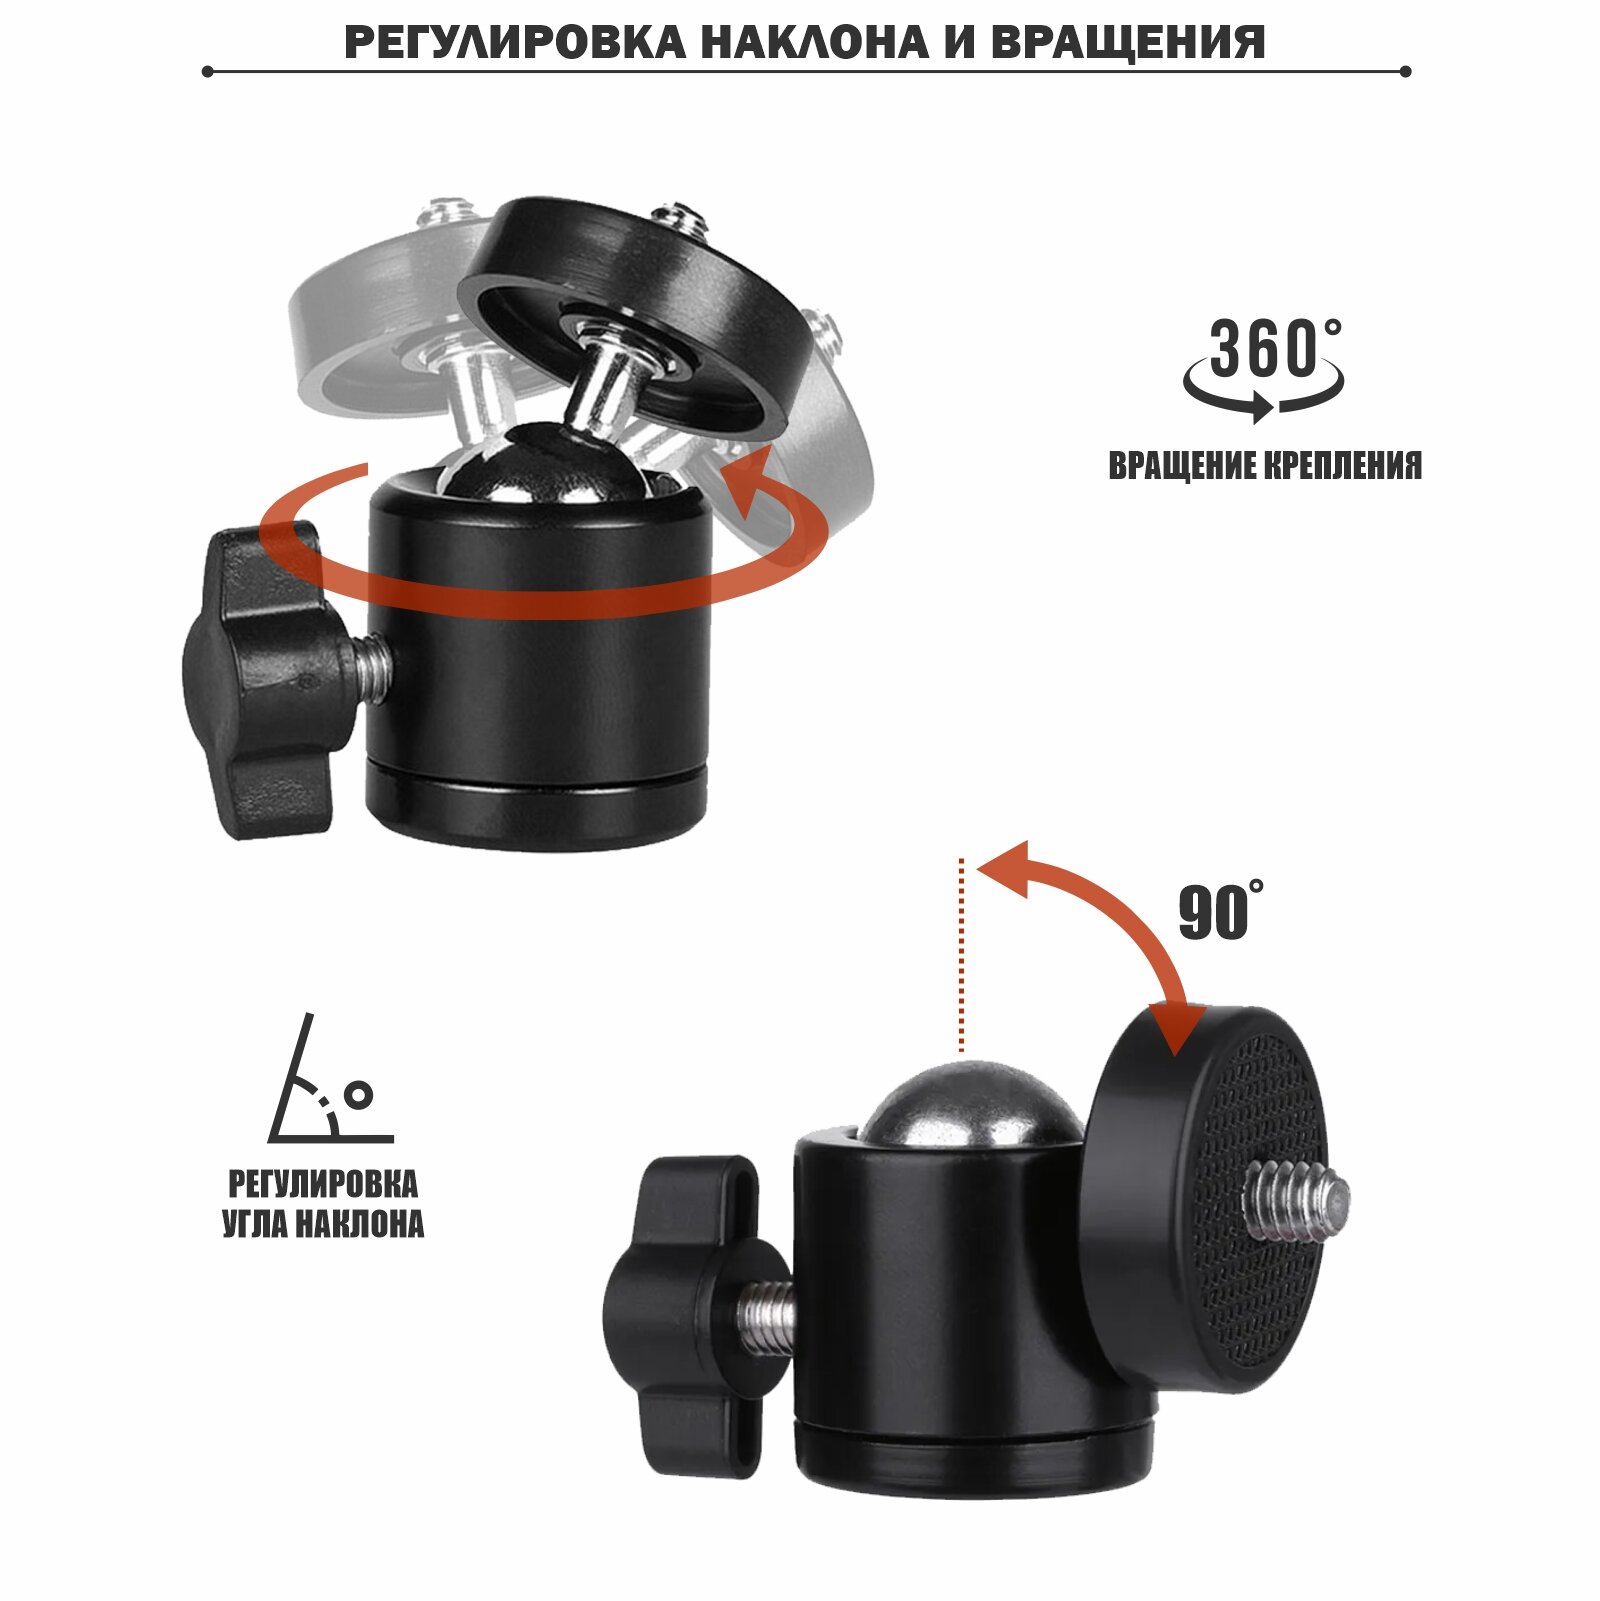 Потолочное крепление FK-Pr1 для проектора весом до 1 кг